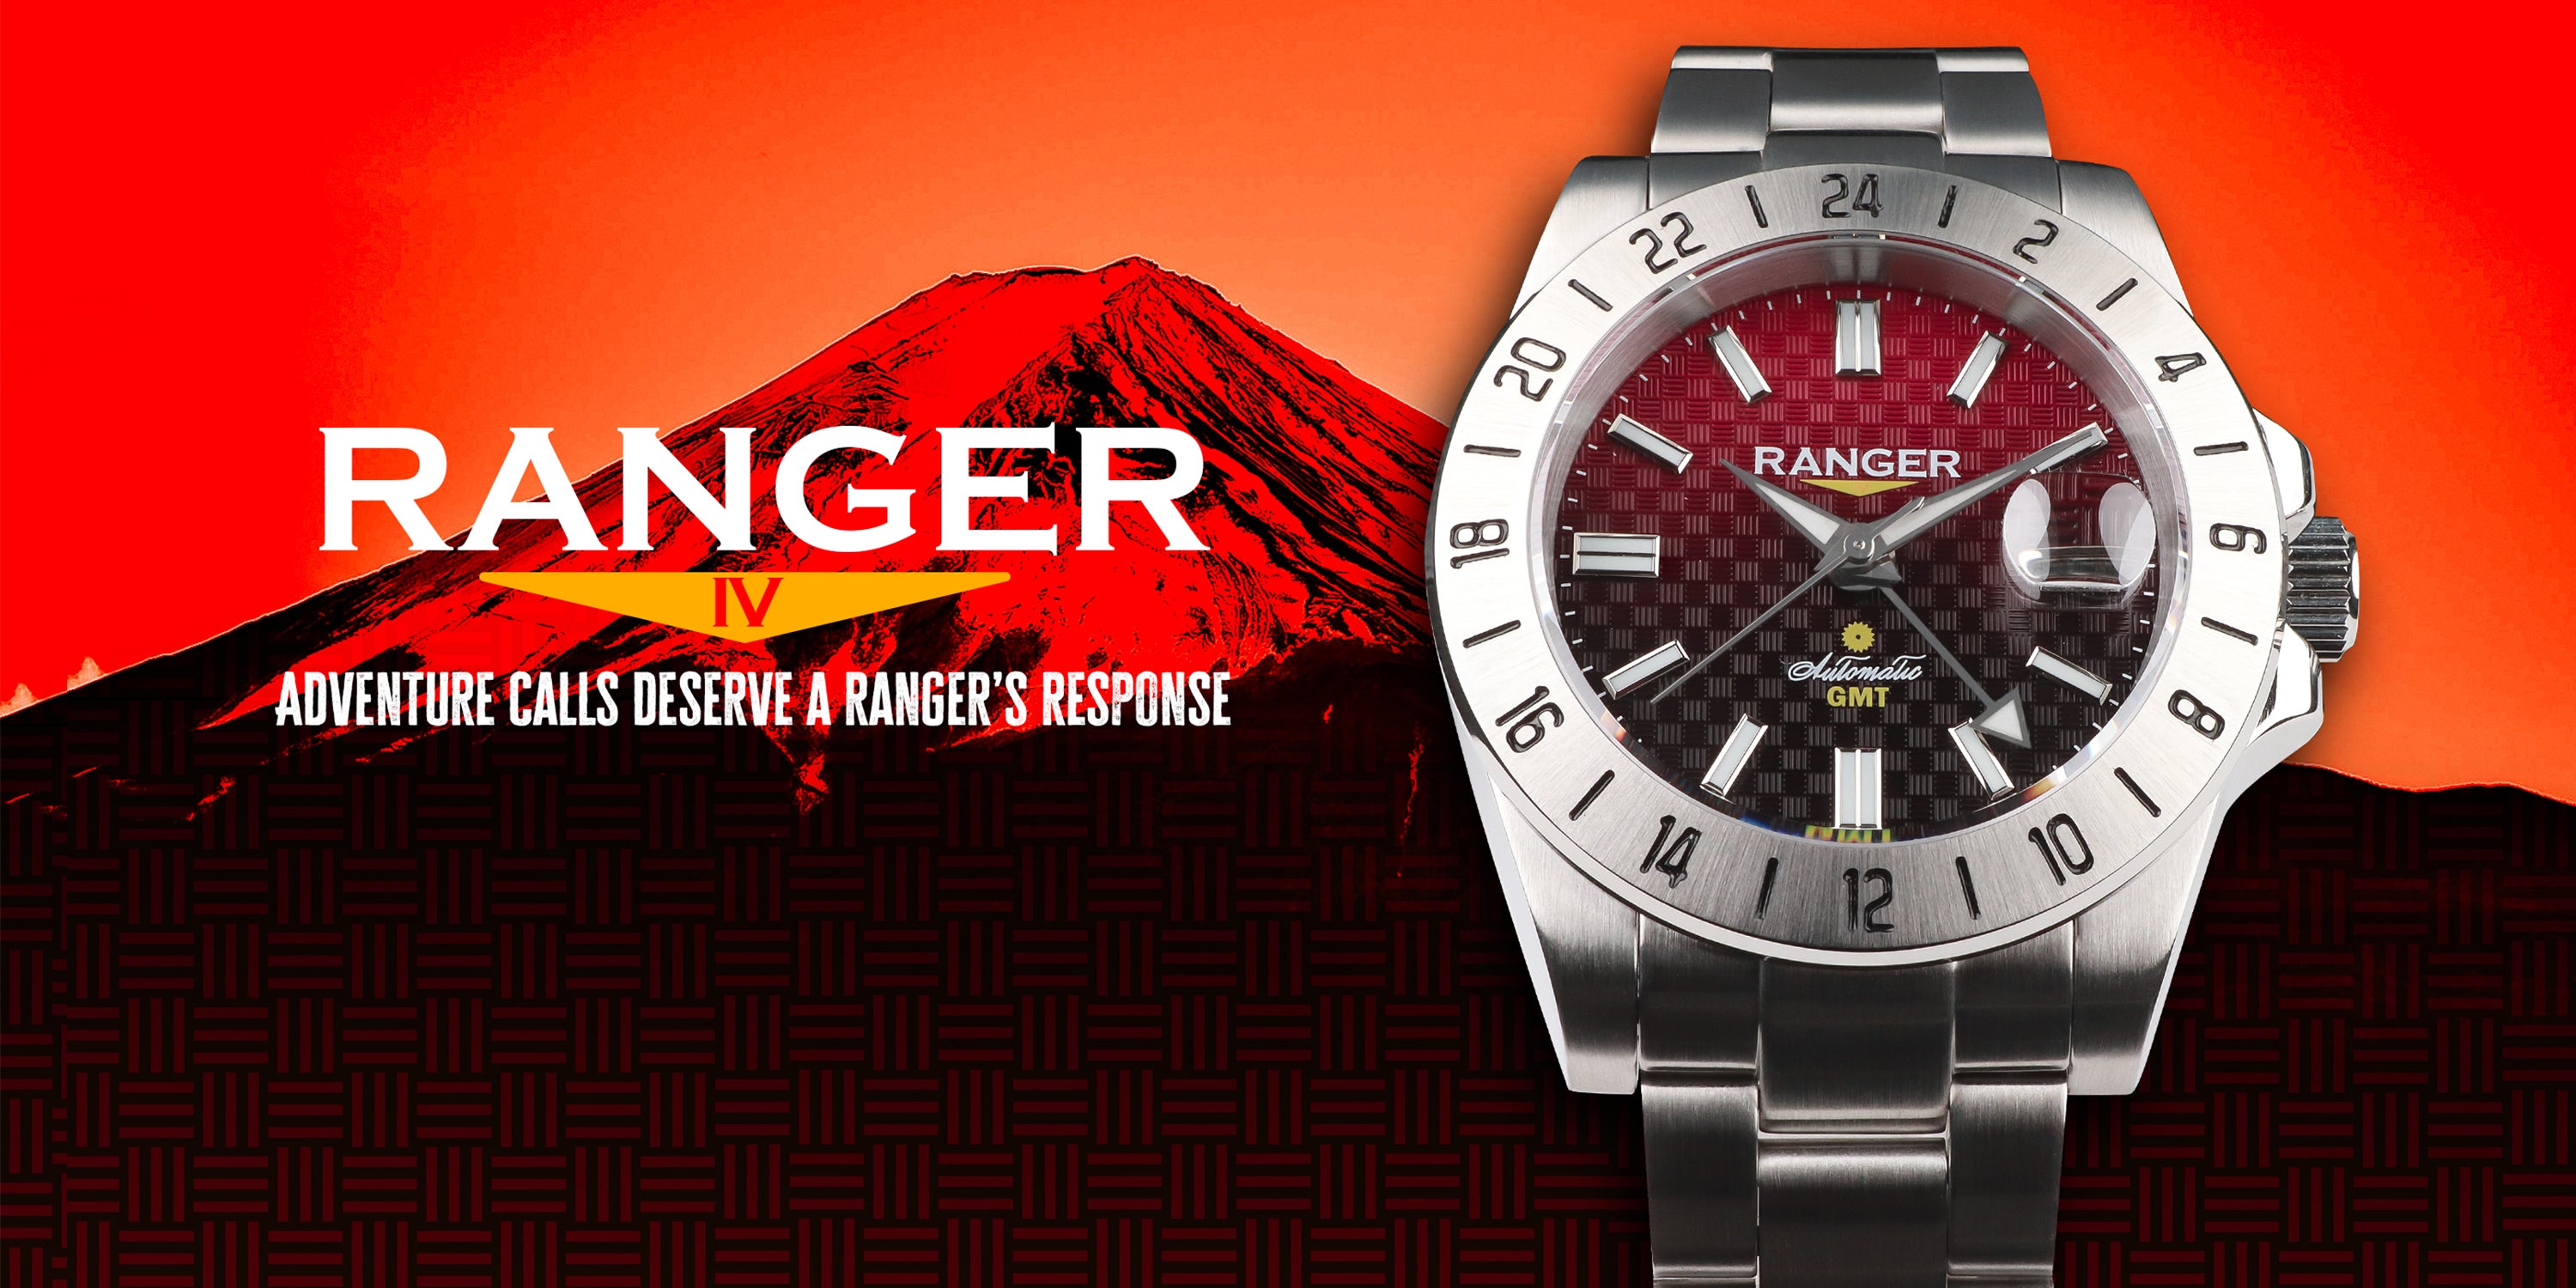 Wancher Watch Ranger IV: AKA FUJI Automatic Watch Seiko NH34 GMT Japanese Automatic Movement Wrist Watch from Japan